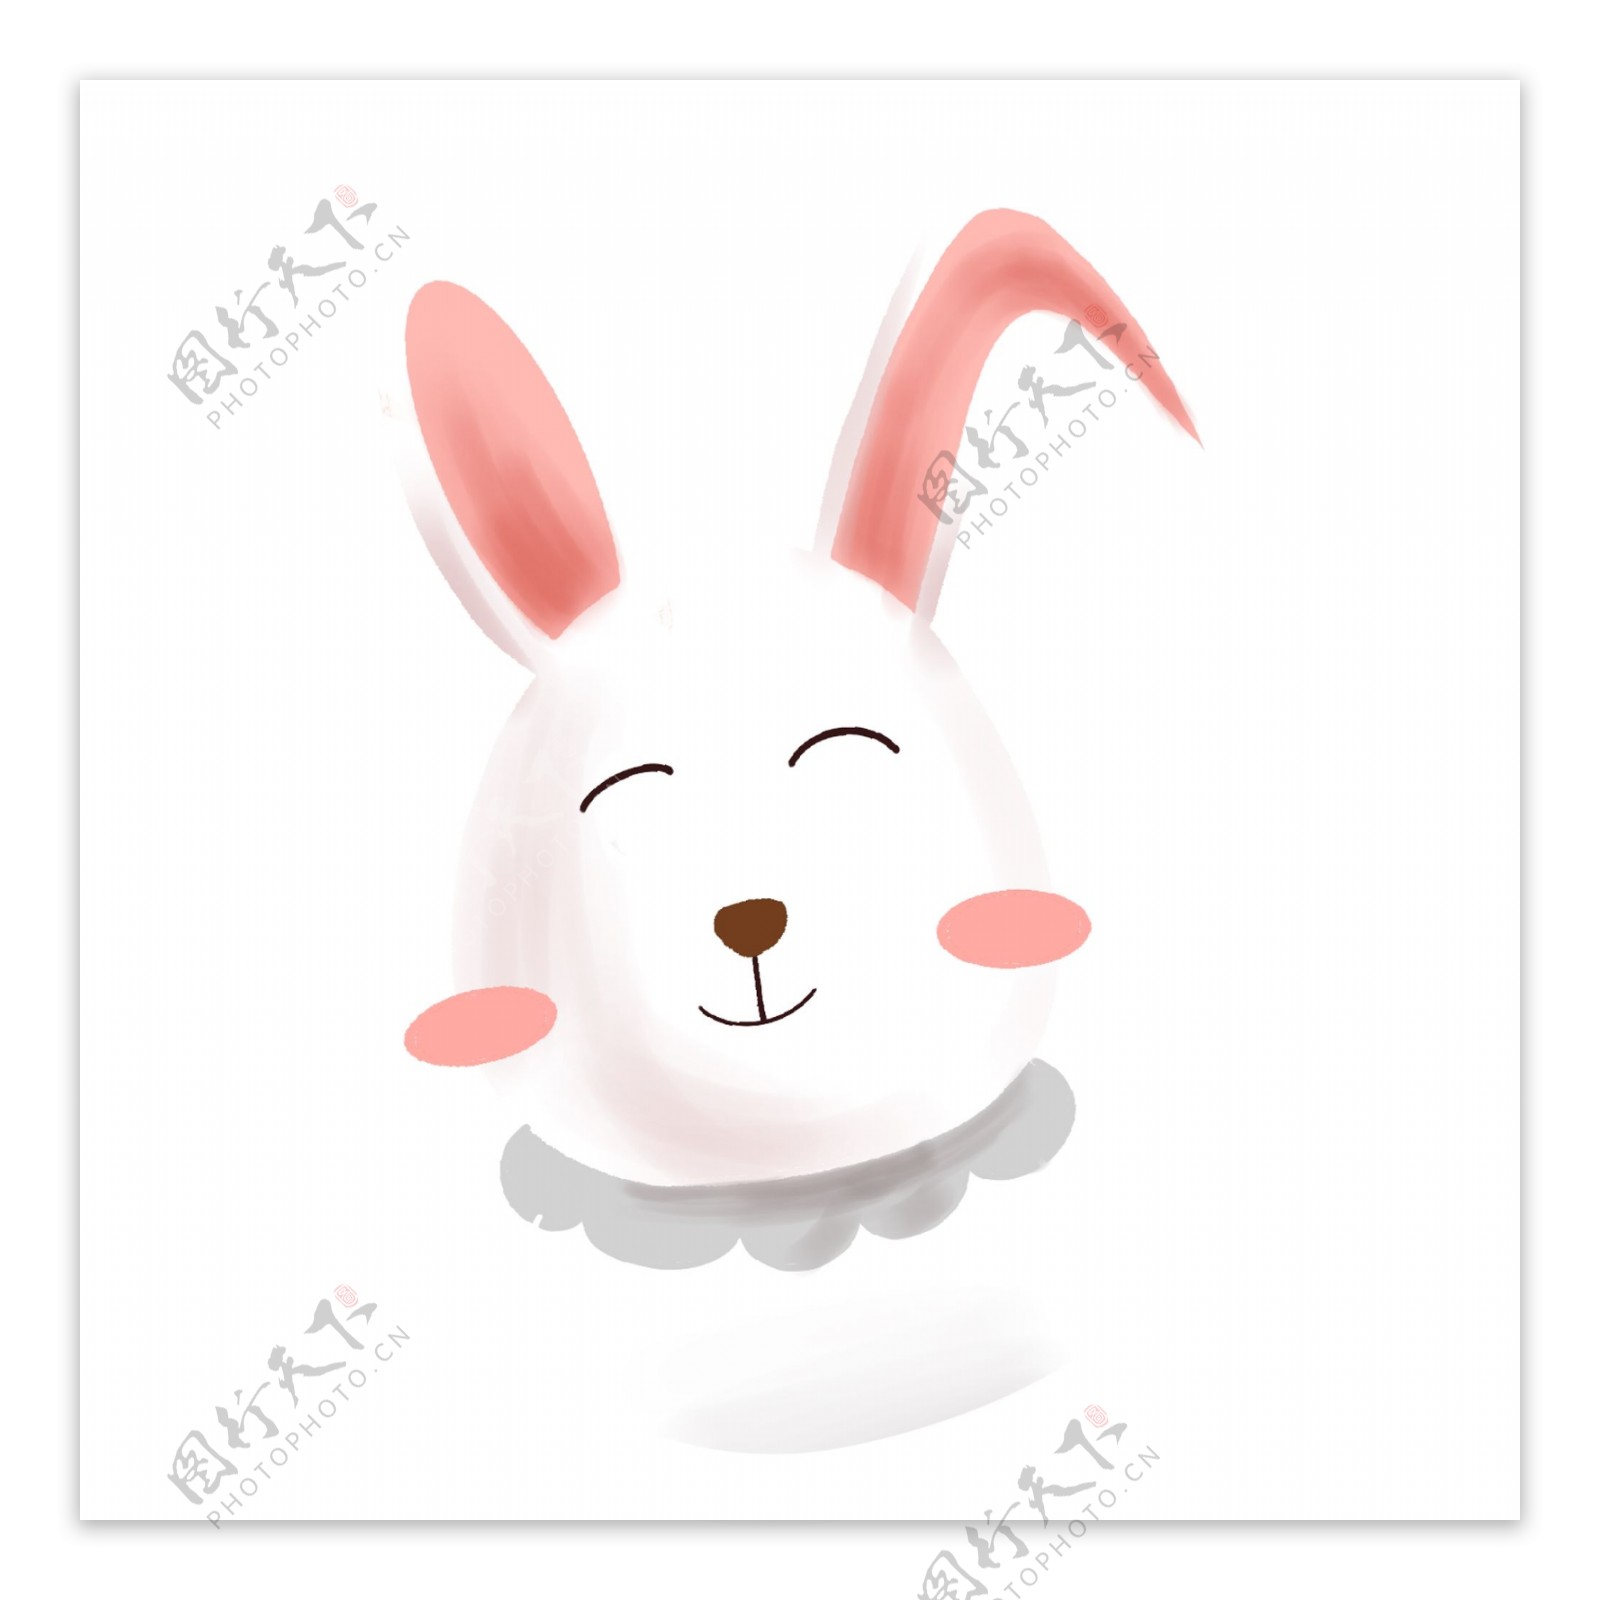 卡通可爱小兔子胖兔子手绘素材